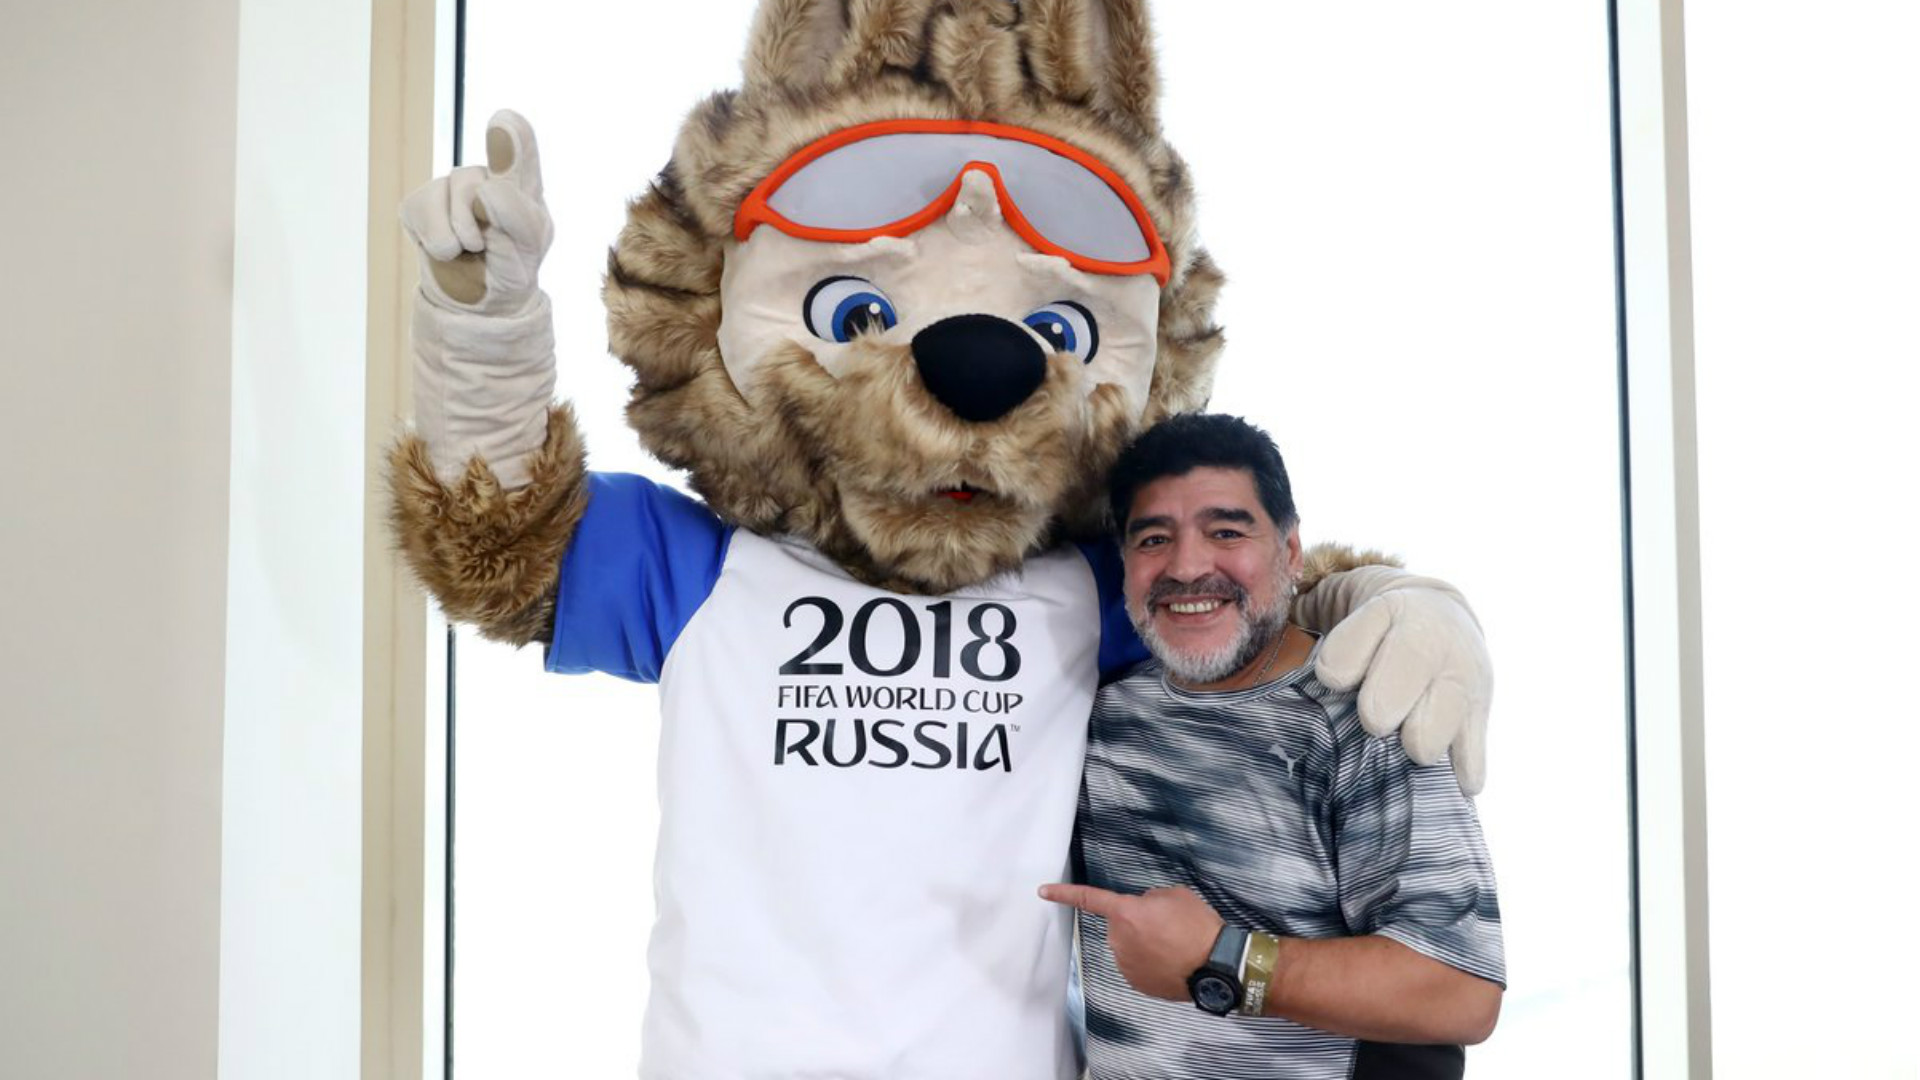 diego-maradona-zavibaka-world-cup-mascot-09052017_16mh93ibz83w9zhmrvfo4ns92.jpg